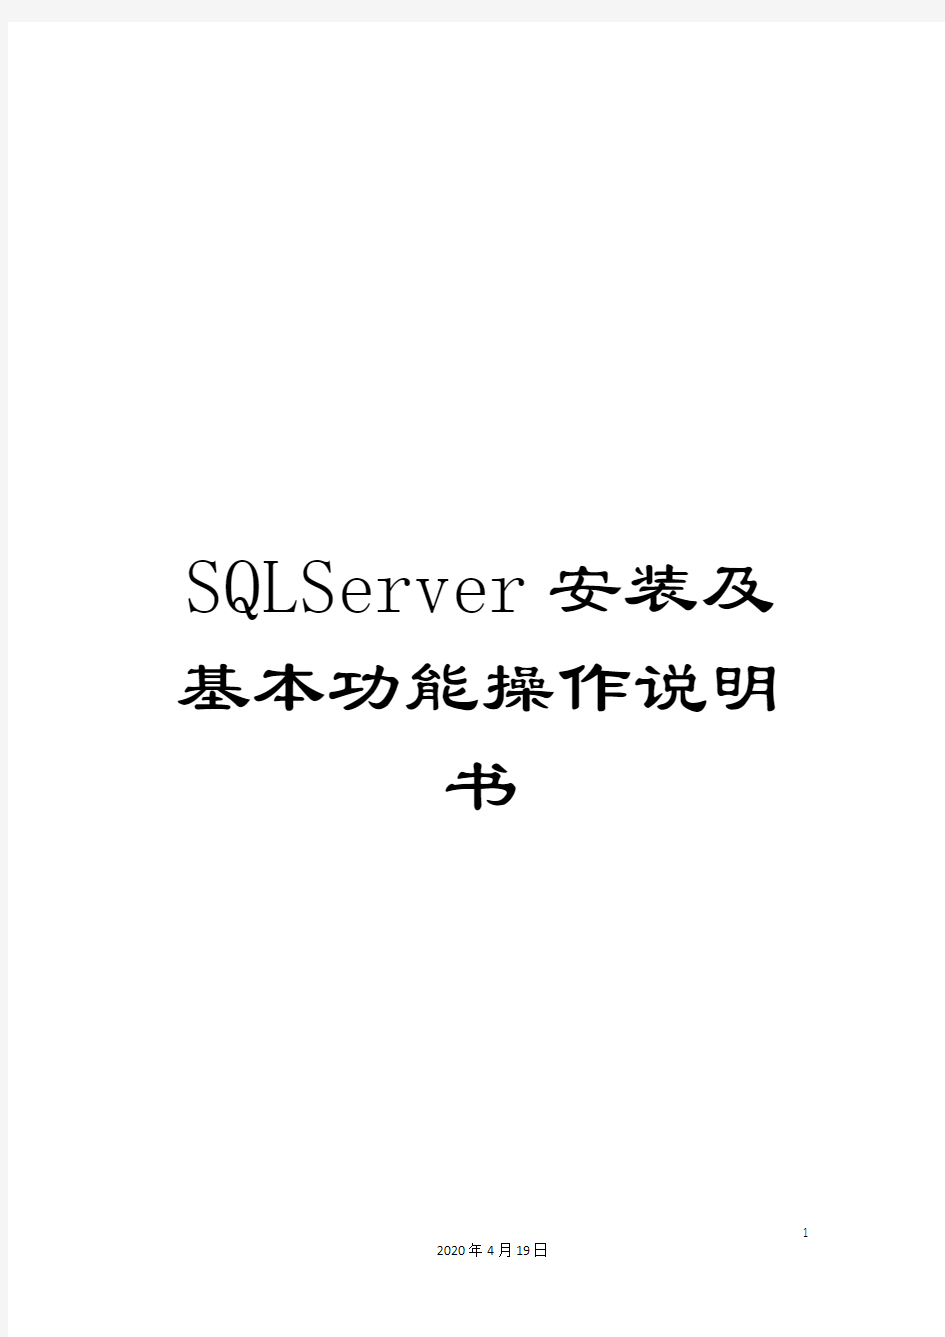 SQLServer安装及基本功能操作说明书